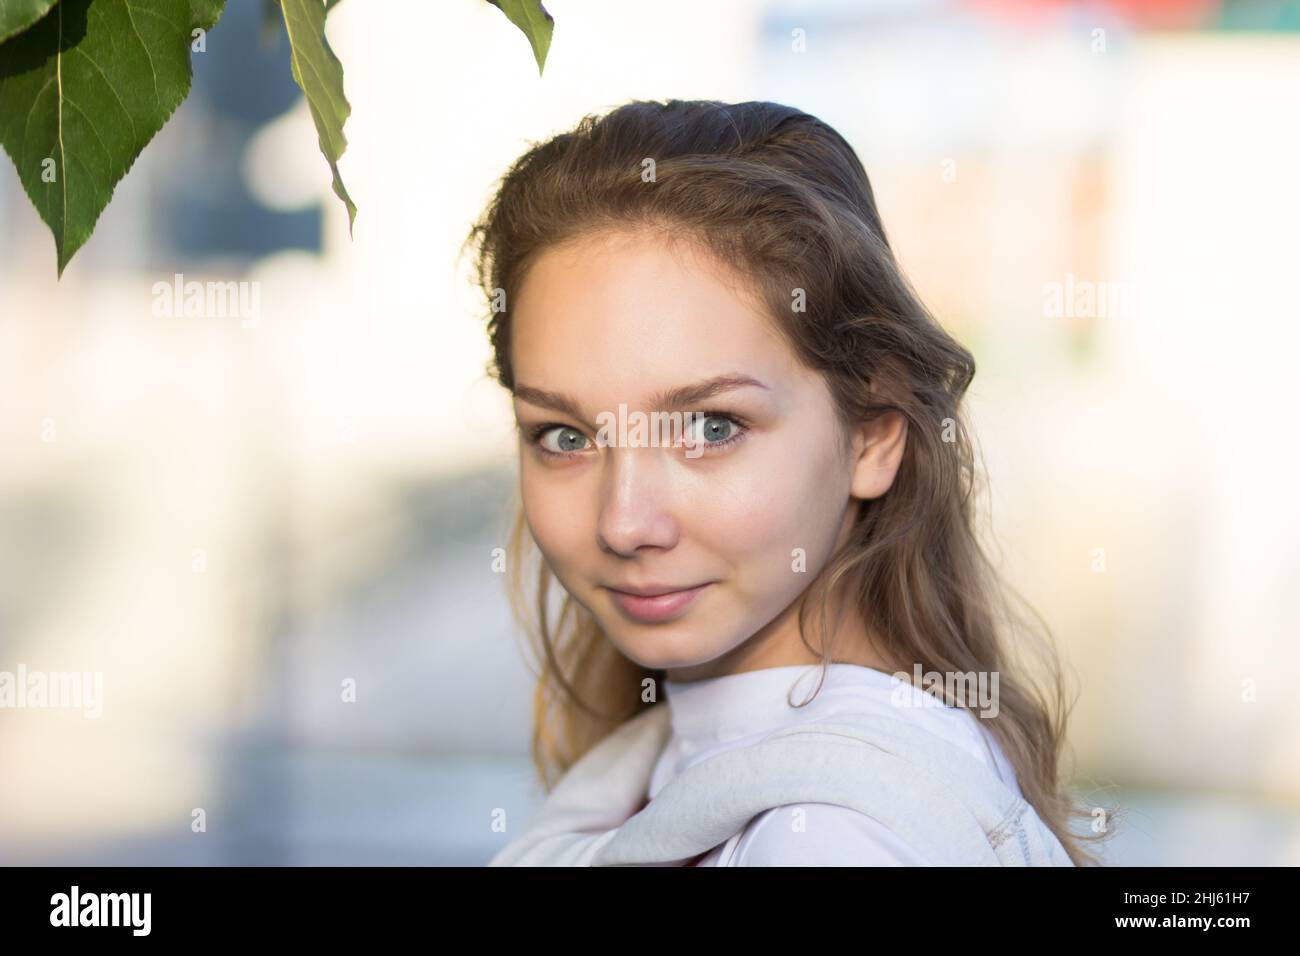 Portrait d'une jeune femme de race blanche dans un parc d'été regardant un appareil photo avec des yeux renflés Banque D'Images